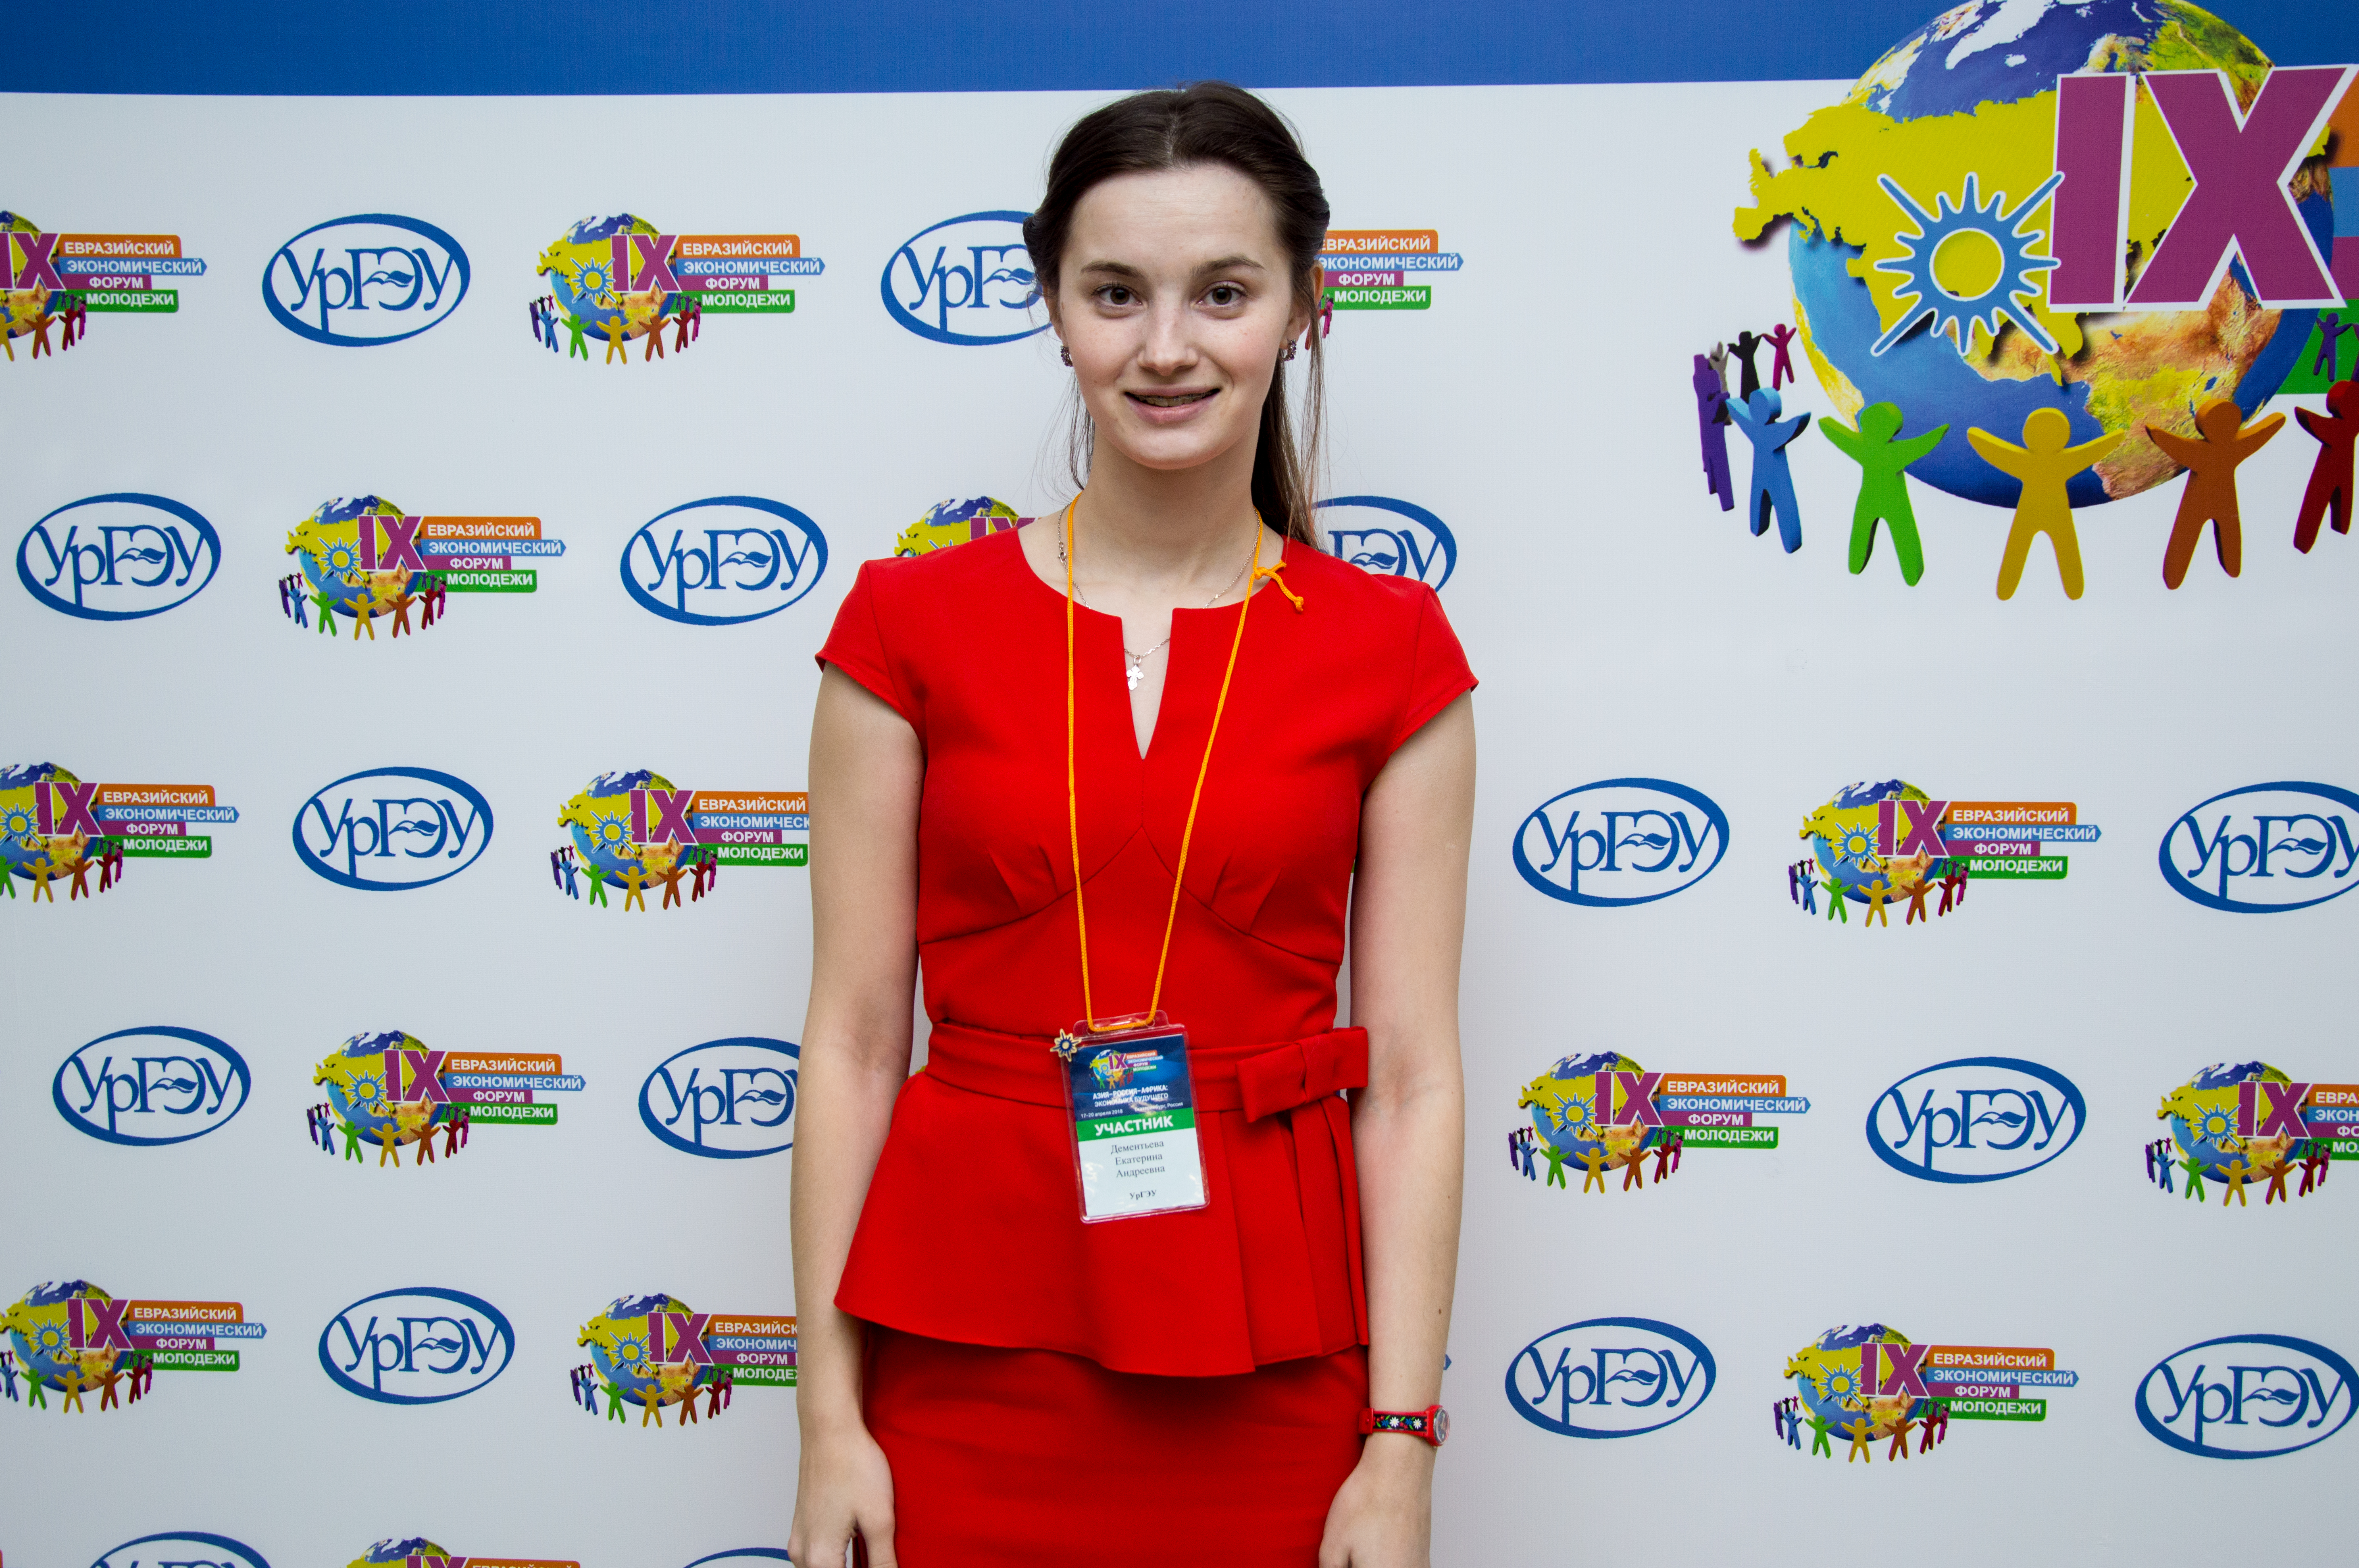 Евразийская девушка. Евразийский Союз молодёжи. ЕЭФ. Super jb forum